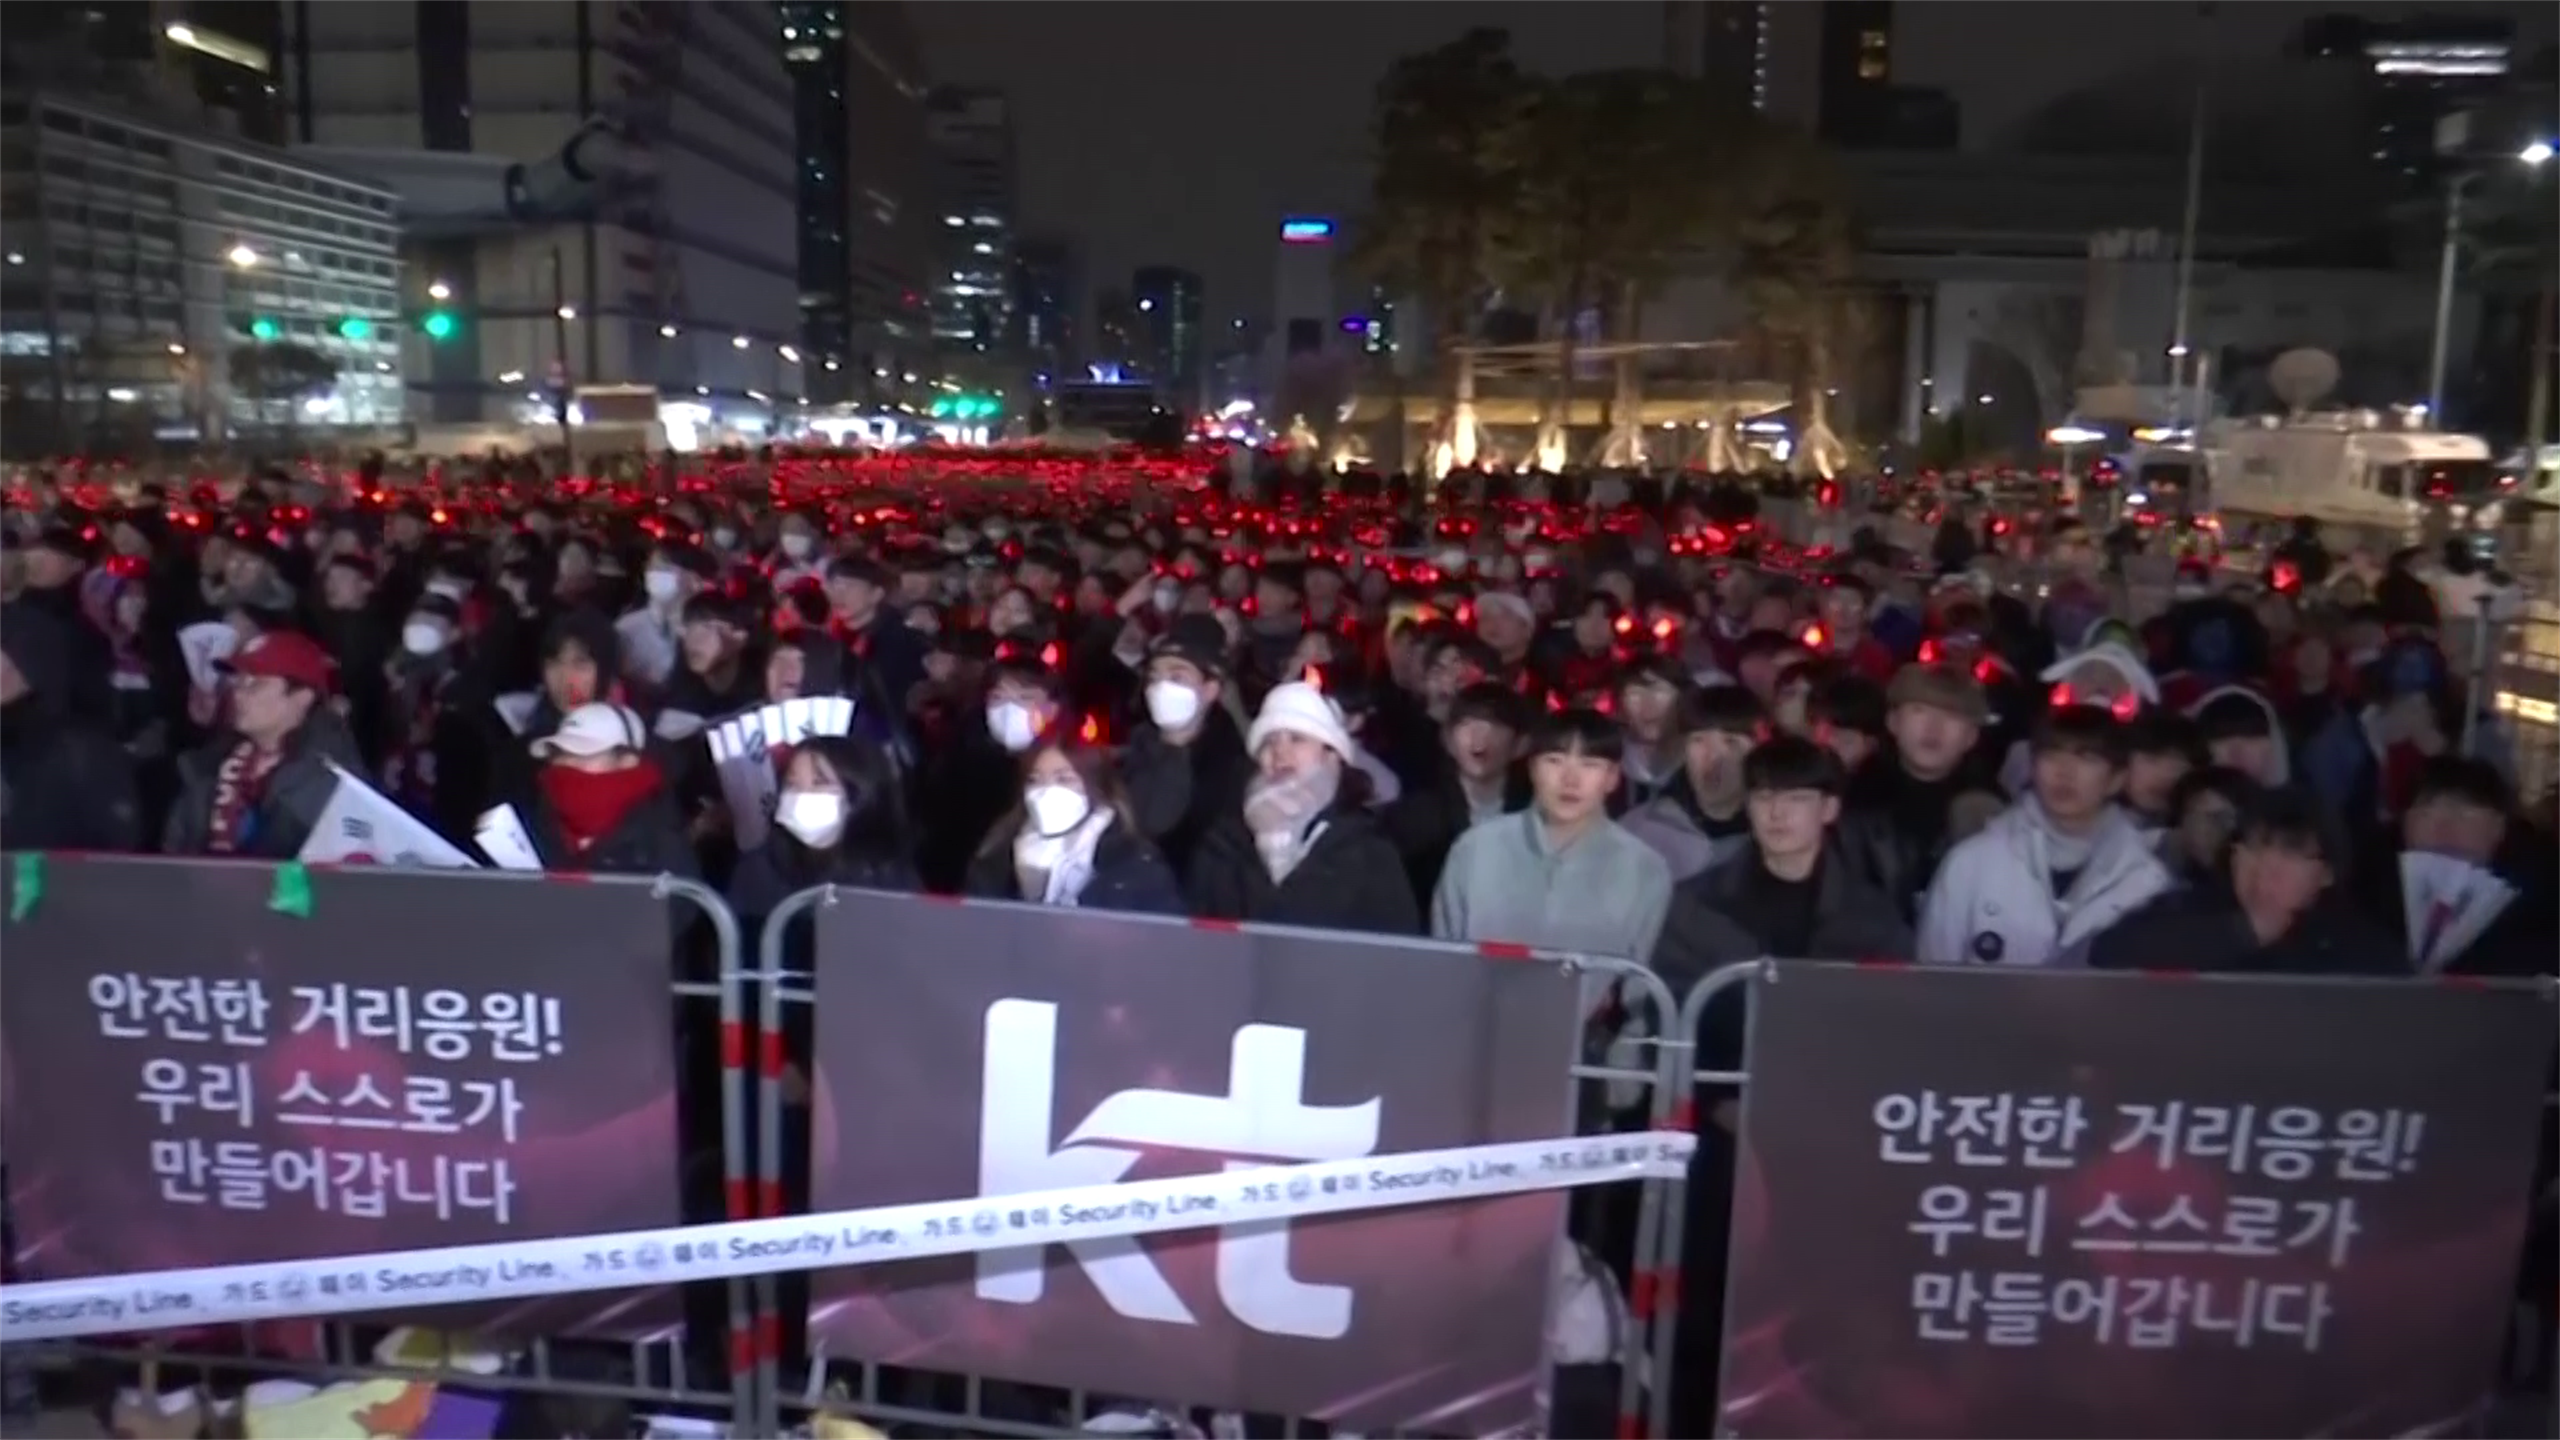 Il freddo (e il risultato) non frena i tifosi della Corea a Seoul